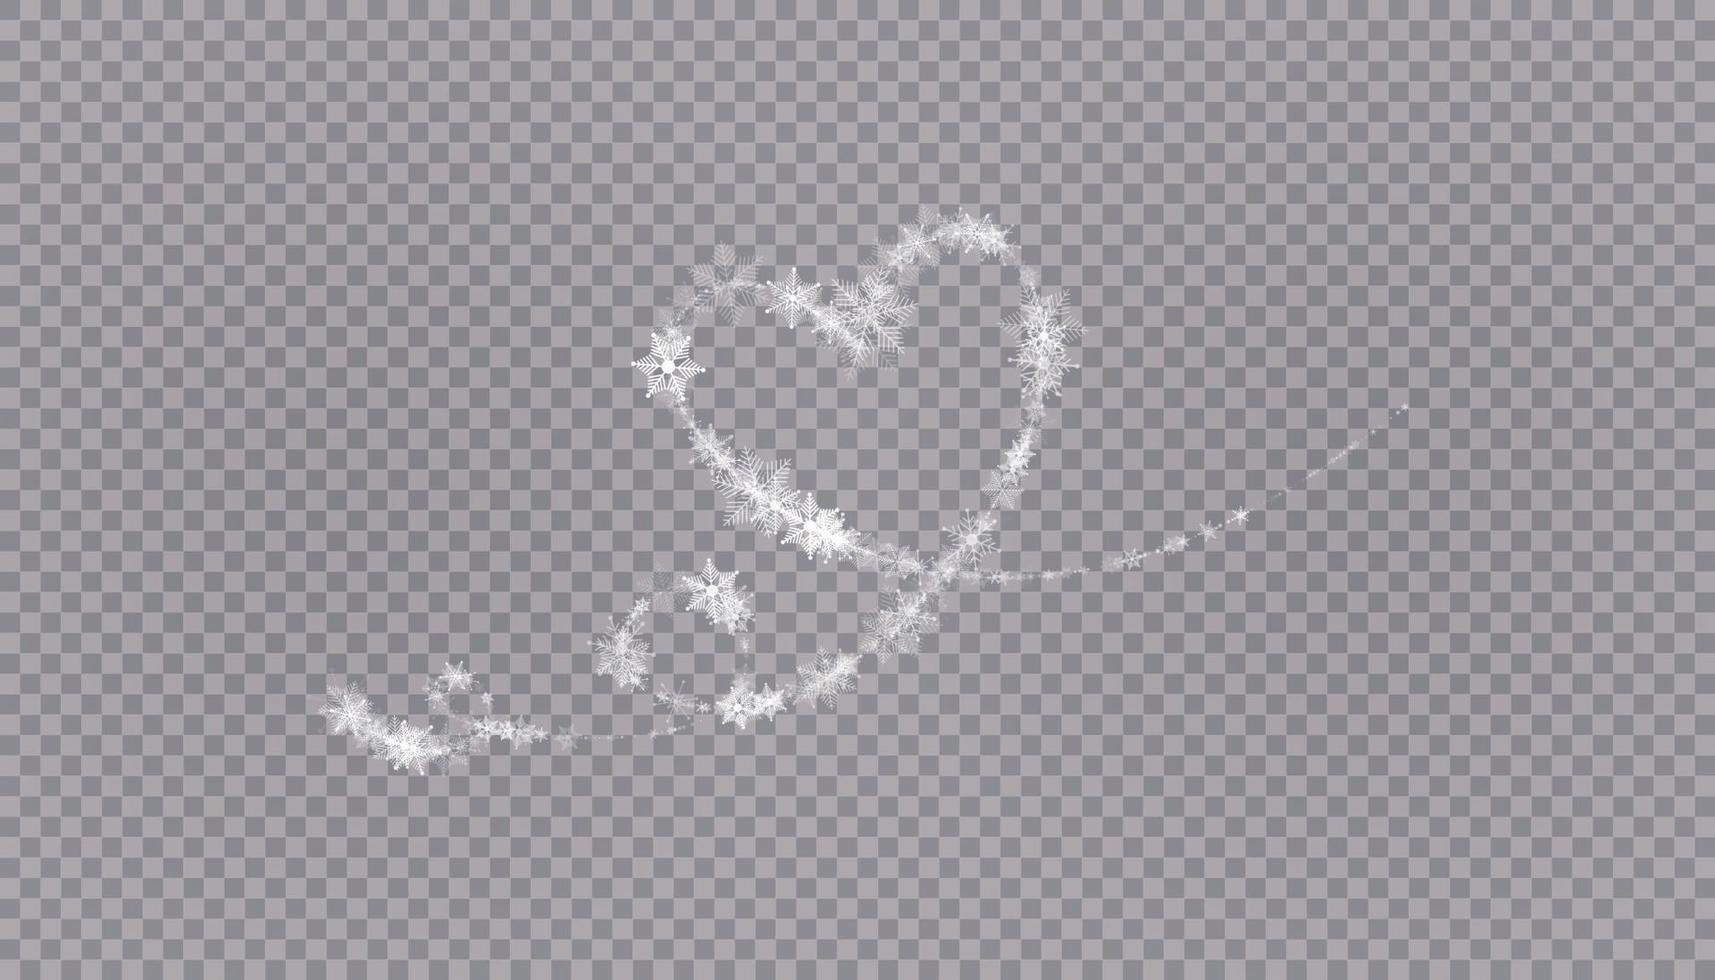 hjärtformade snöflingor i platt stil i kontinuerliga ritlinjer. spår av vitt damm. magisk abstrakt bakgrund isolerad på bakgrunden. mirakel och magi. vektor illustration platt design.